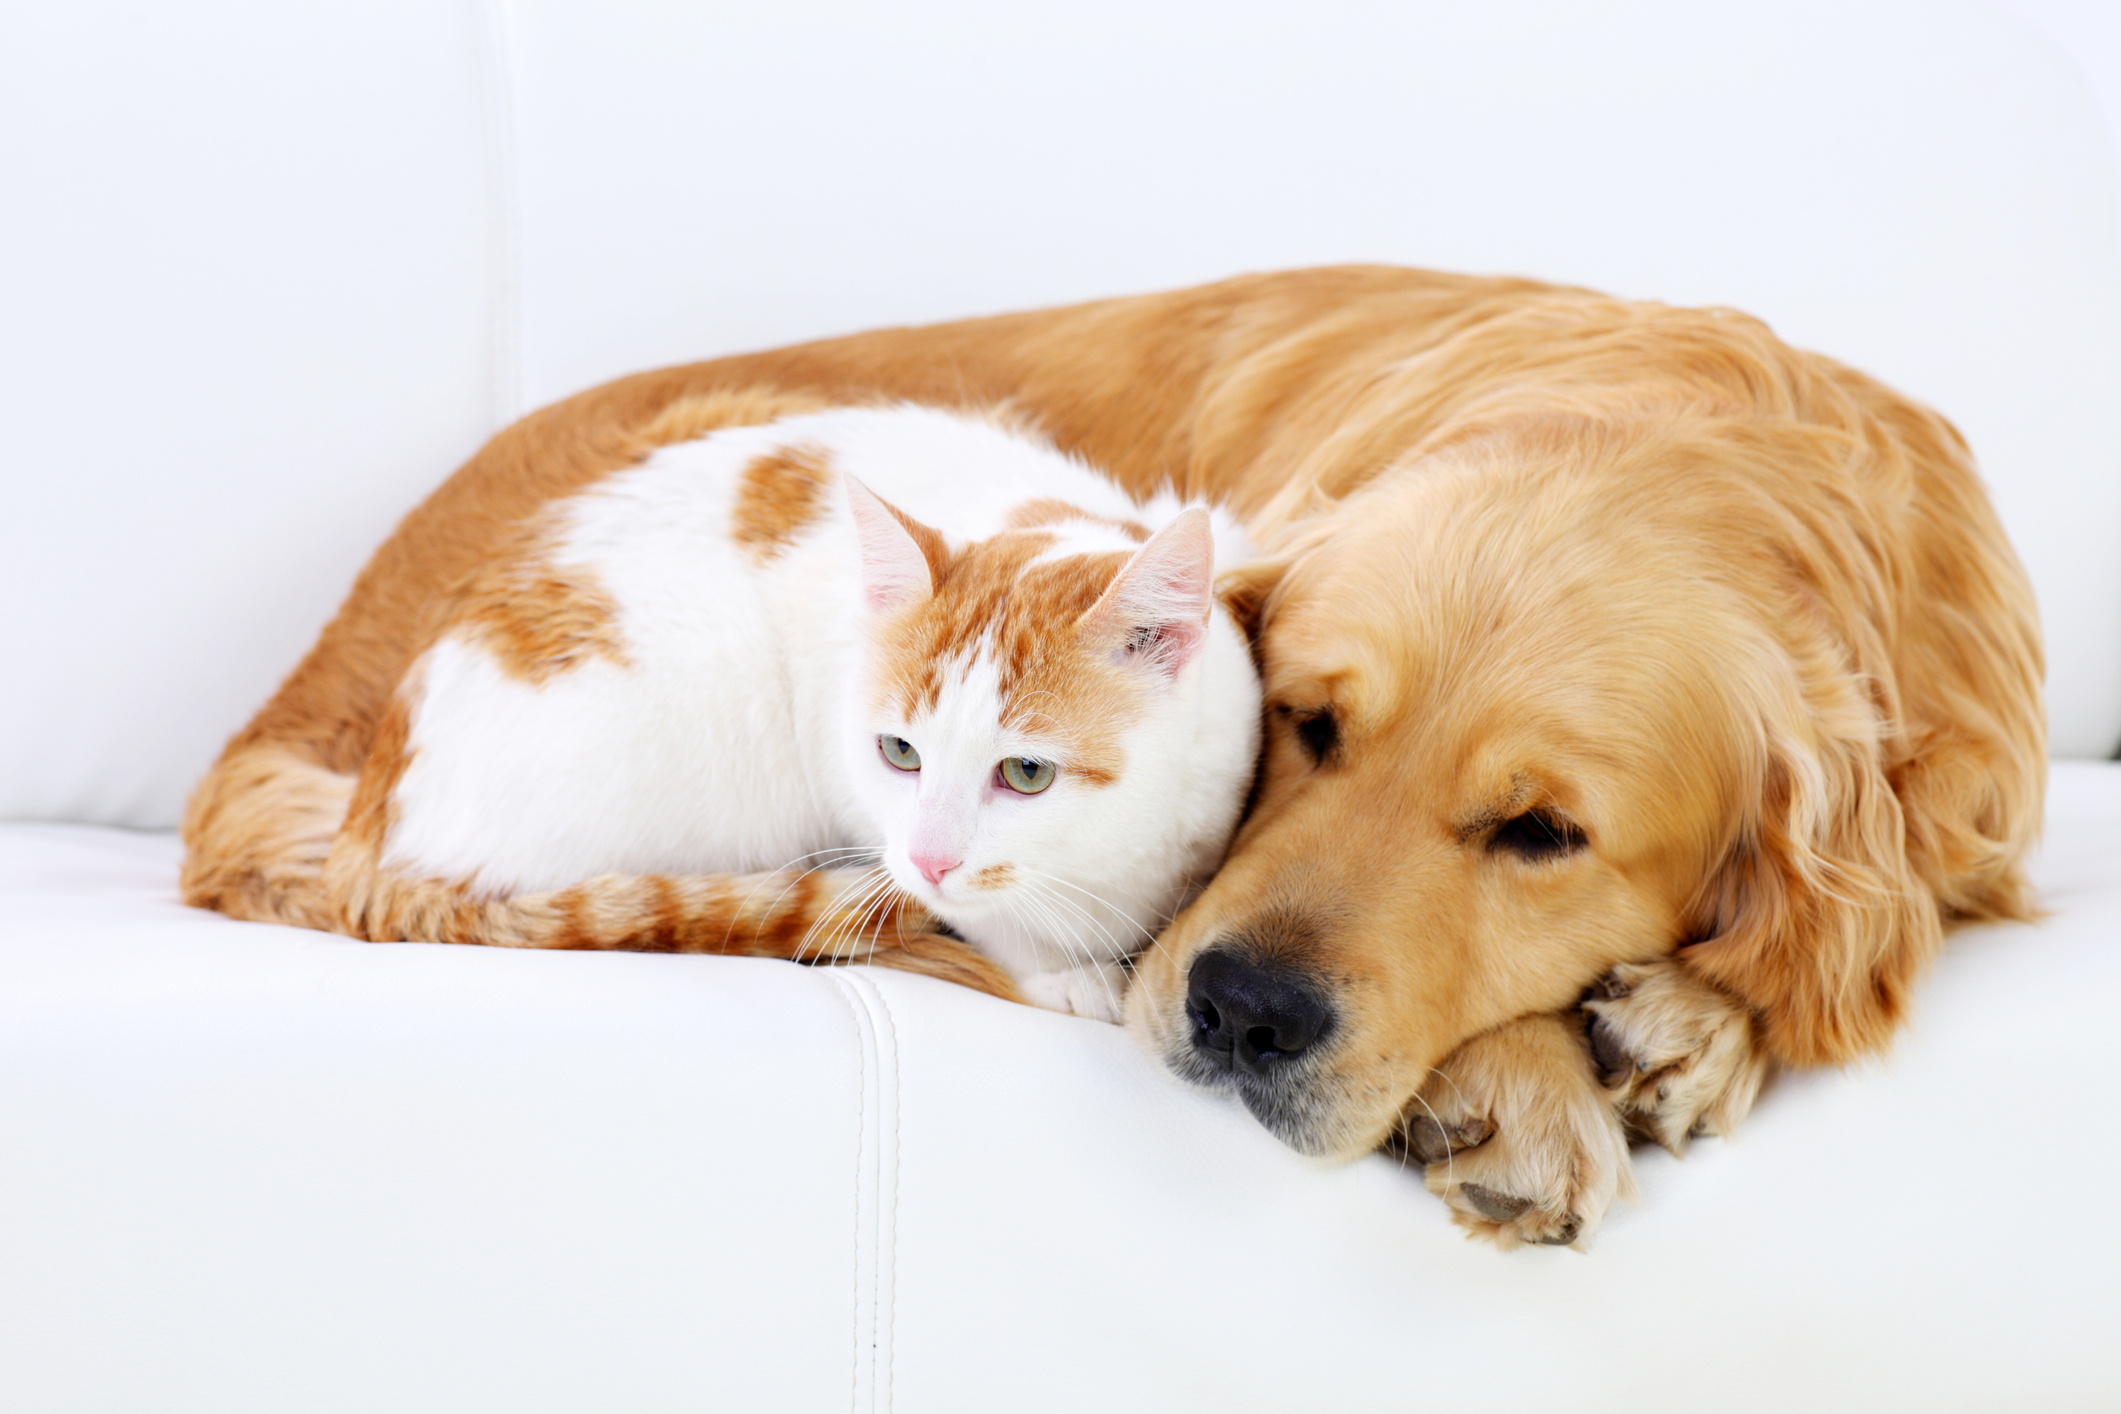 Pets in russia. Кошки и собаки. Собака и кошка вместе. Фото кошек и собак. Кошечки собачки картинки.